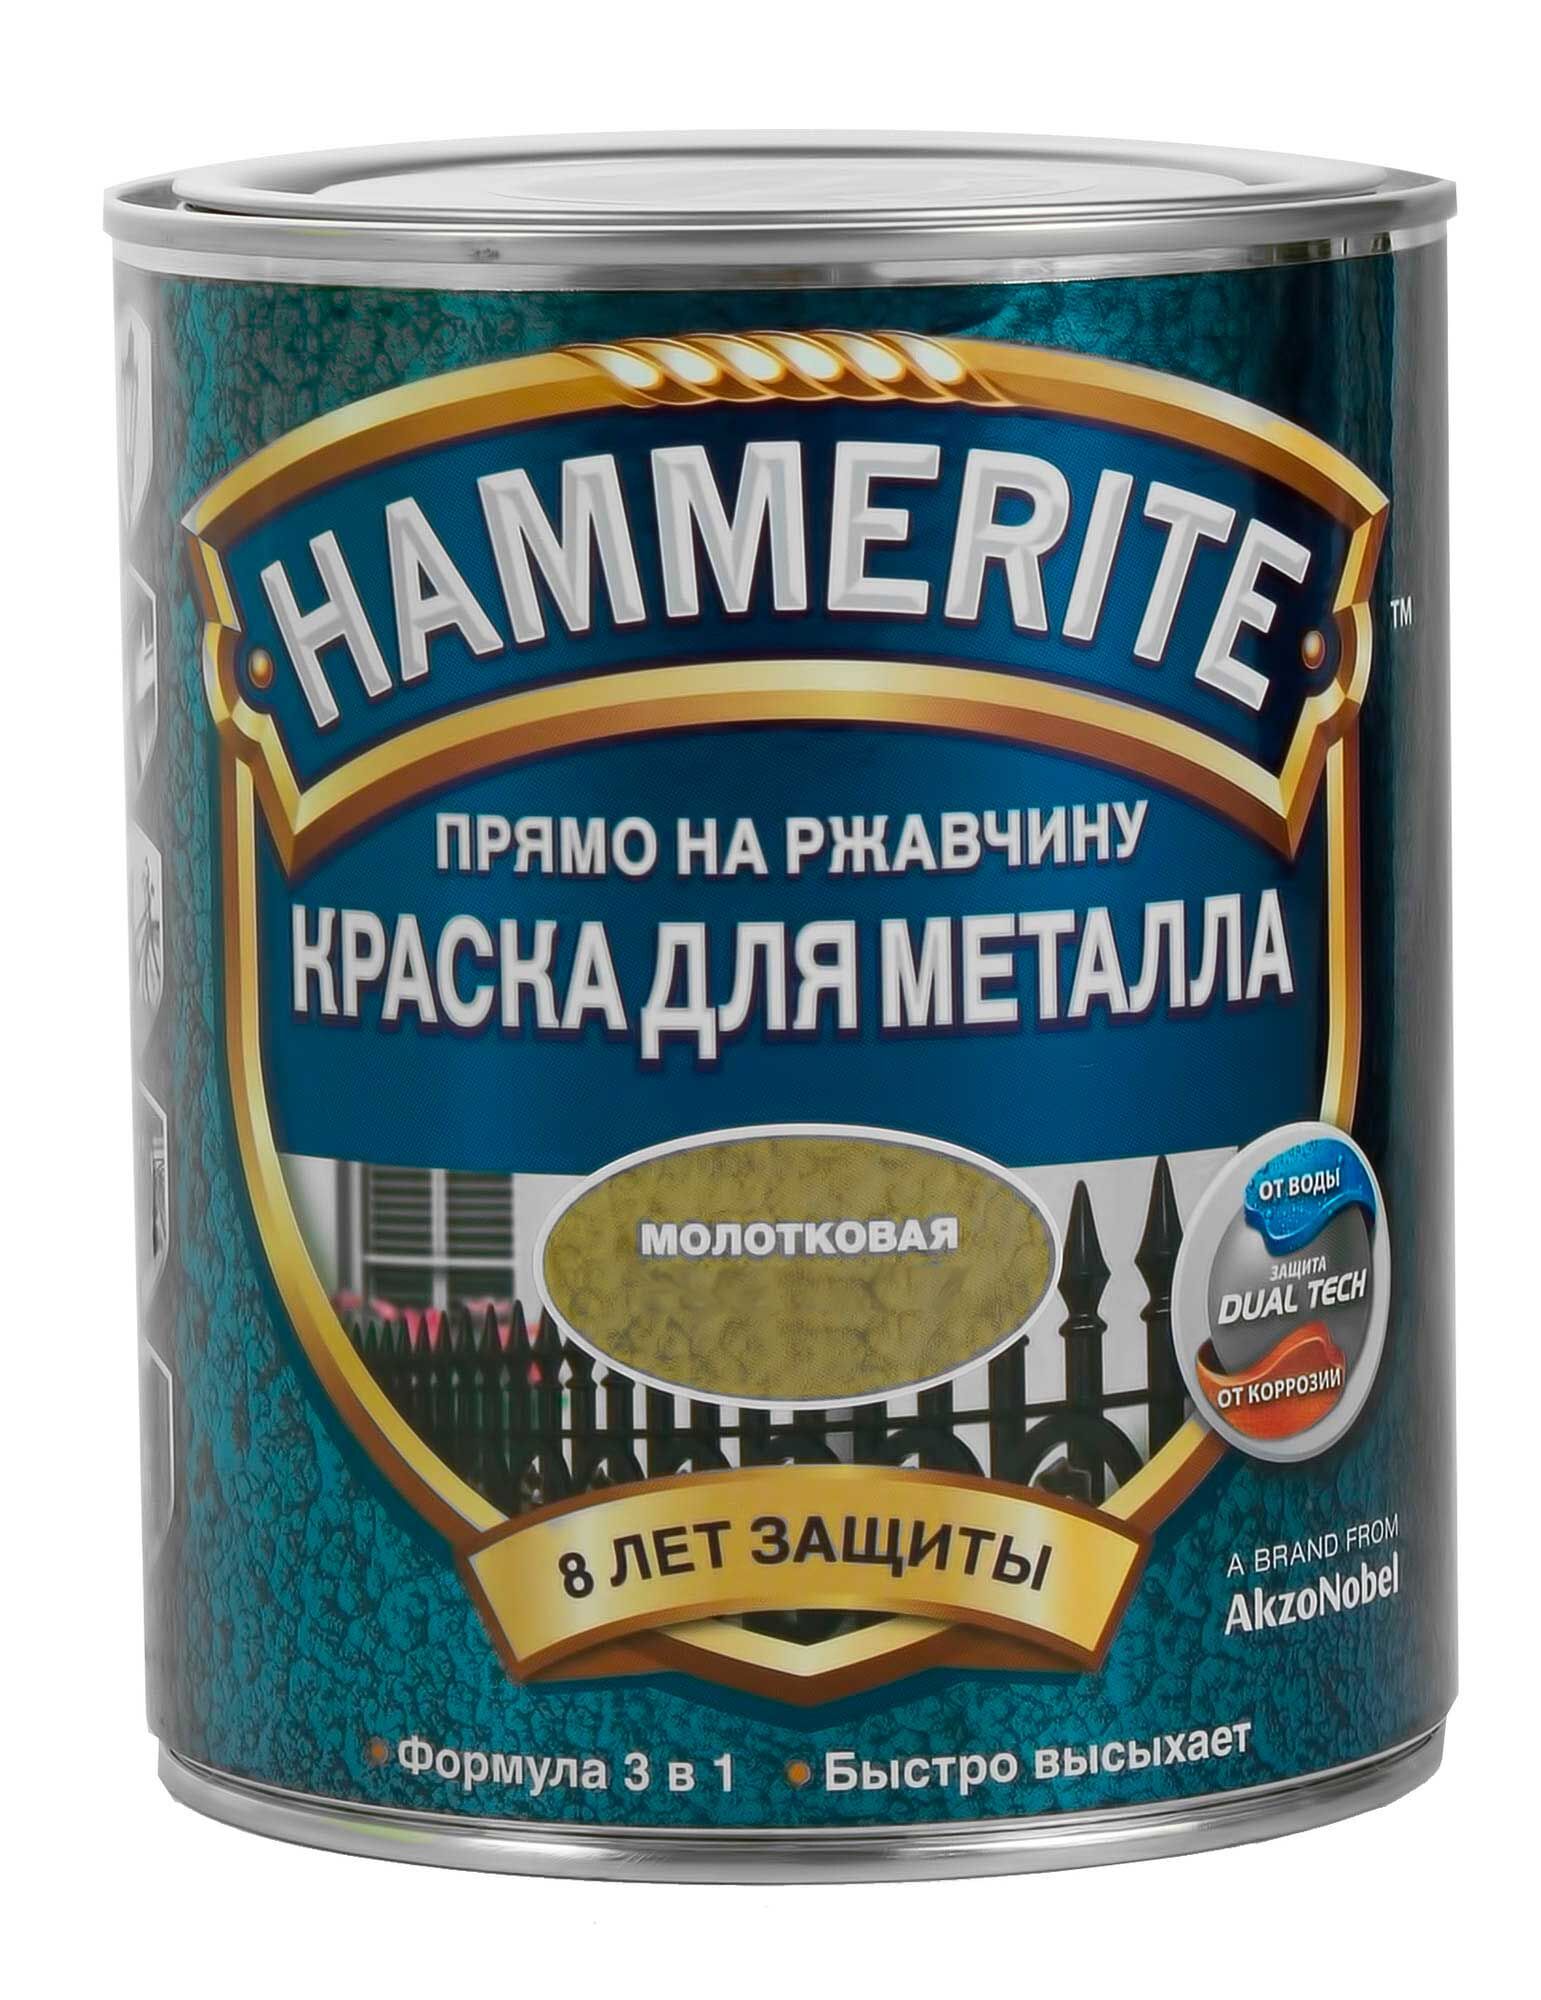 Hammerite краска алкидная для металлических поверхностей молотковая медная (0,75л) 5093365